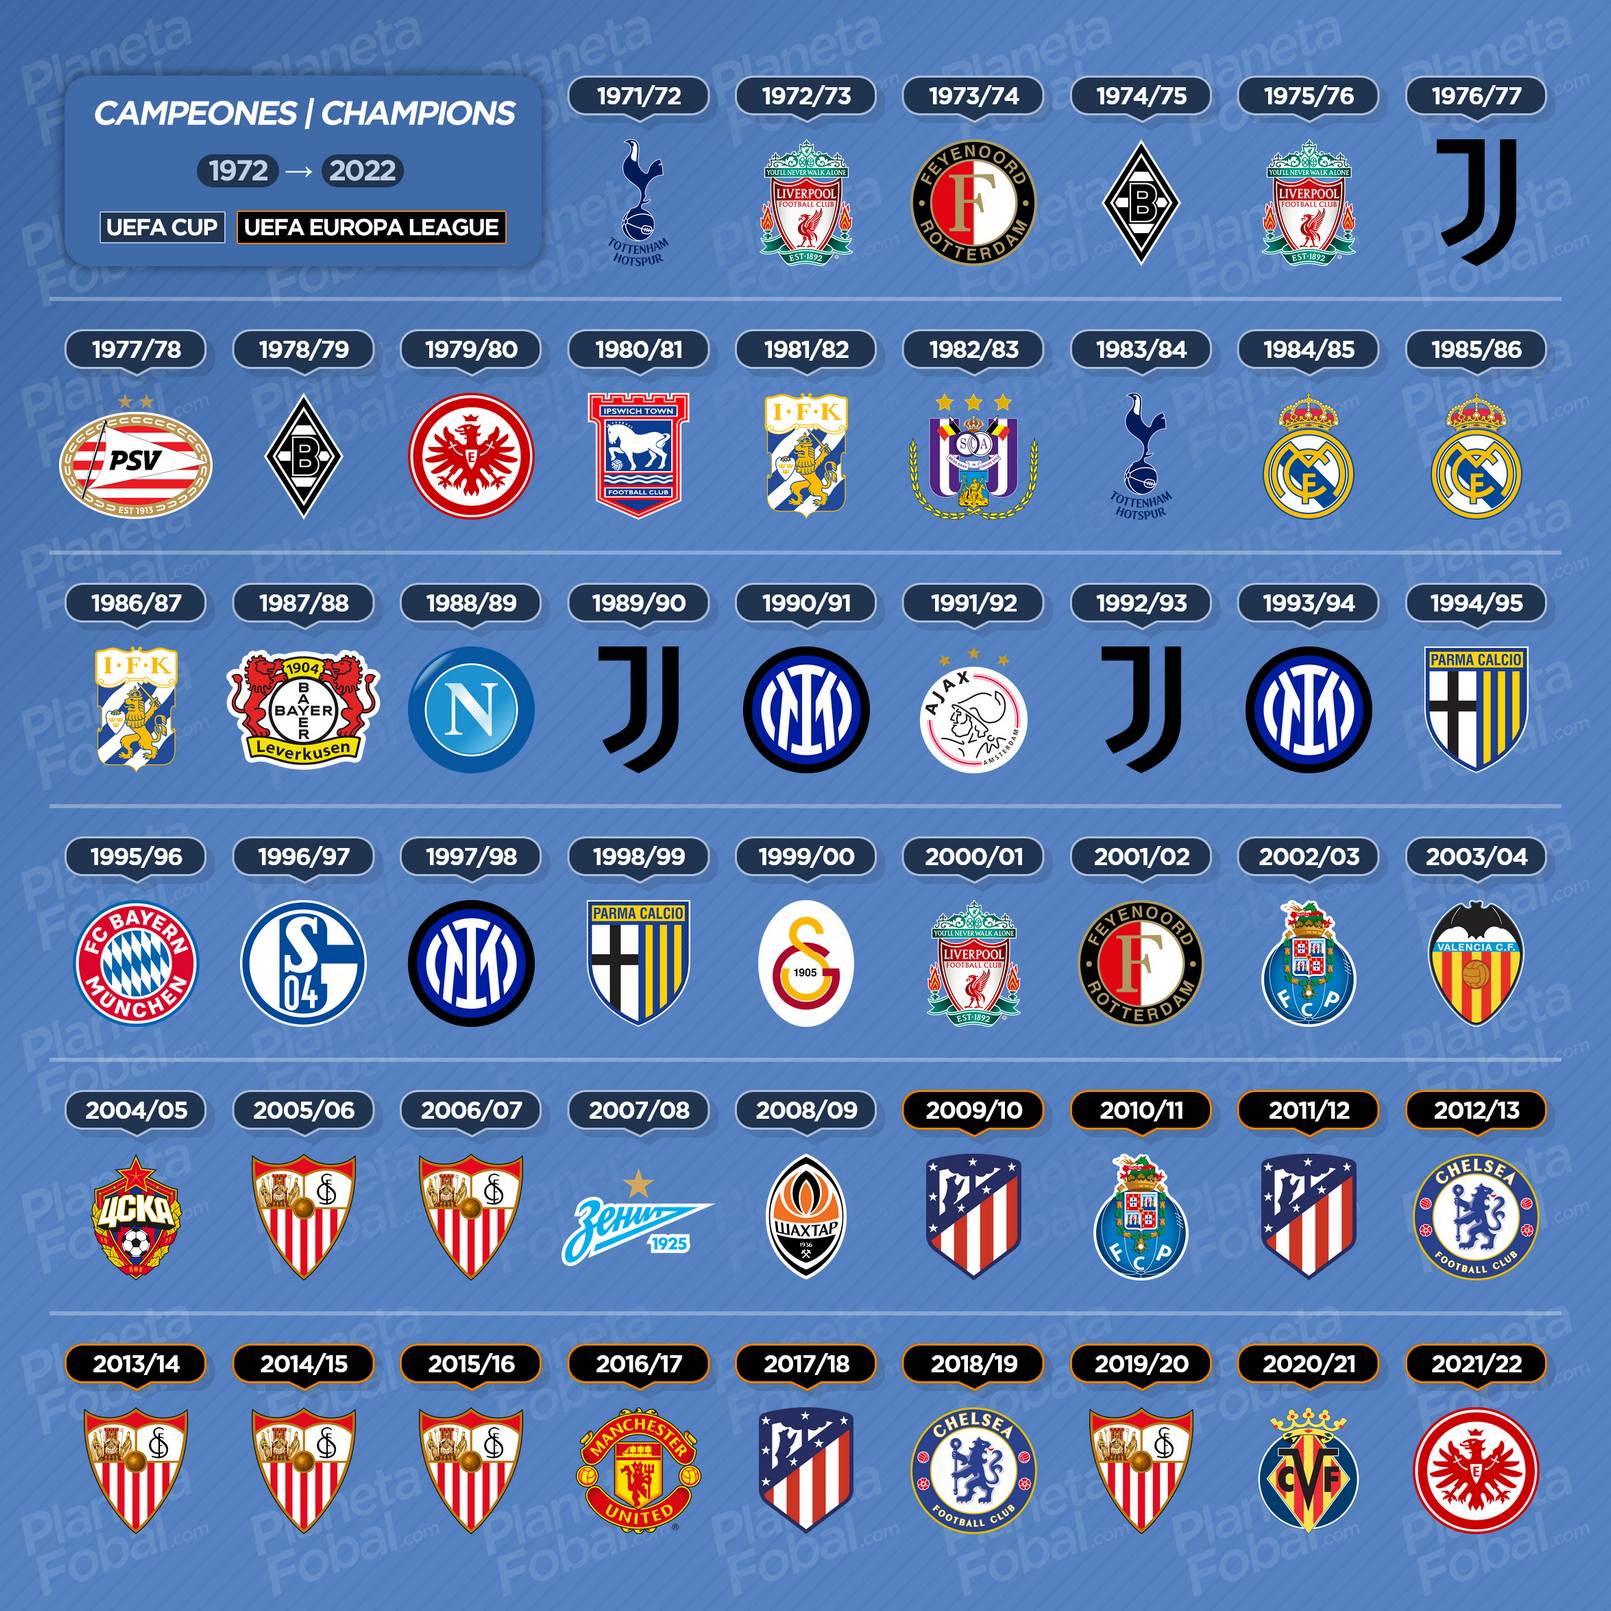 Campeones de la UEFA Cup / Europa League (1972 → 2022)